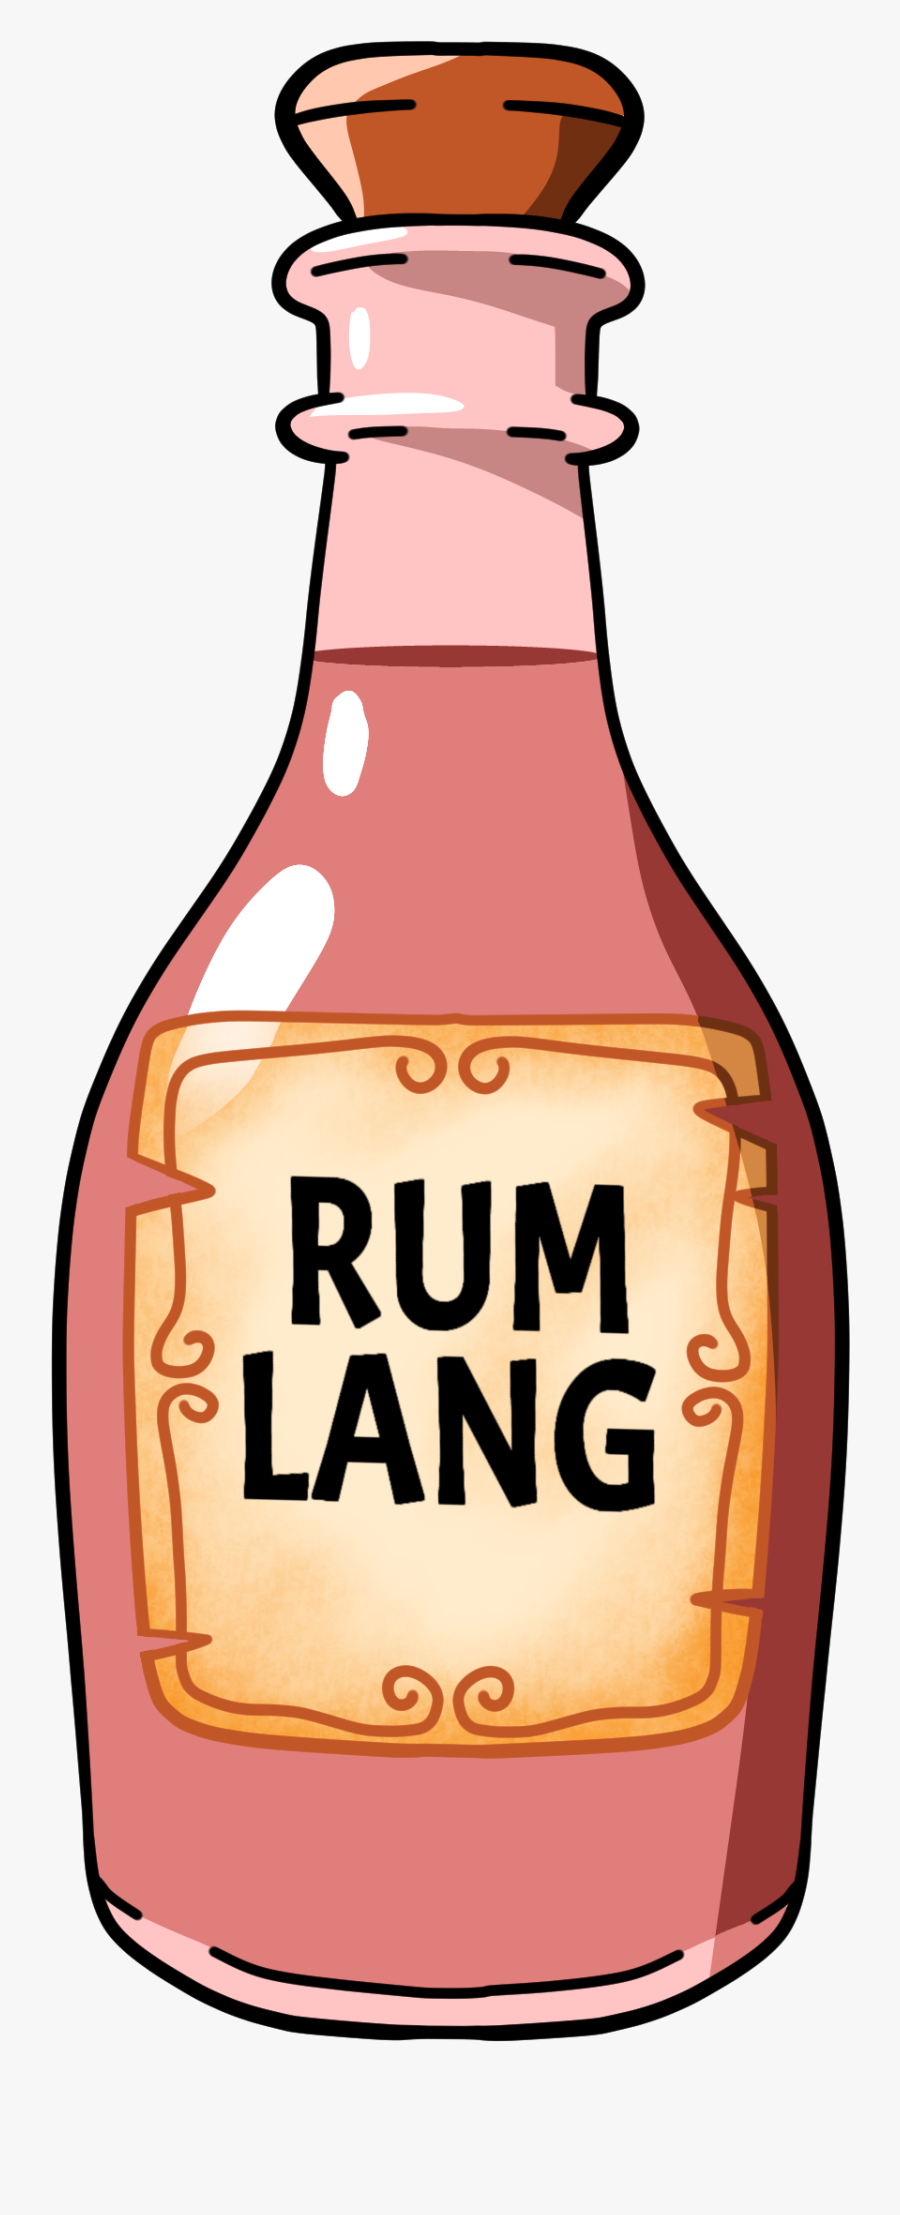 Rum Bottle Clipart - Glass Bottle, Transparent Clipart